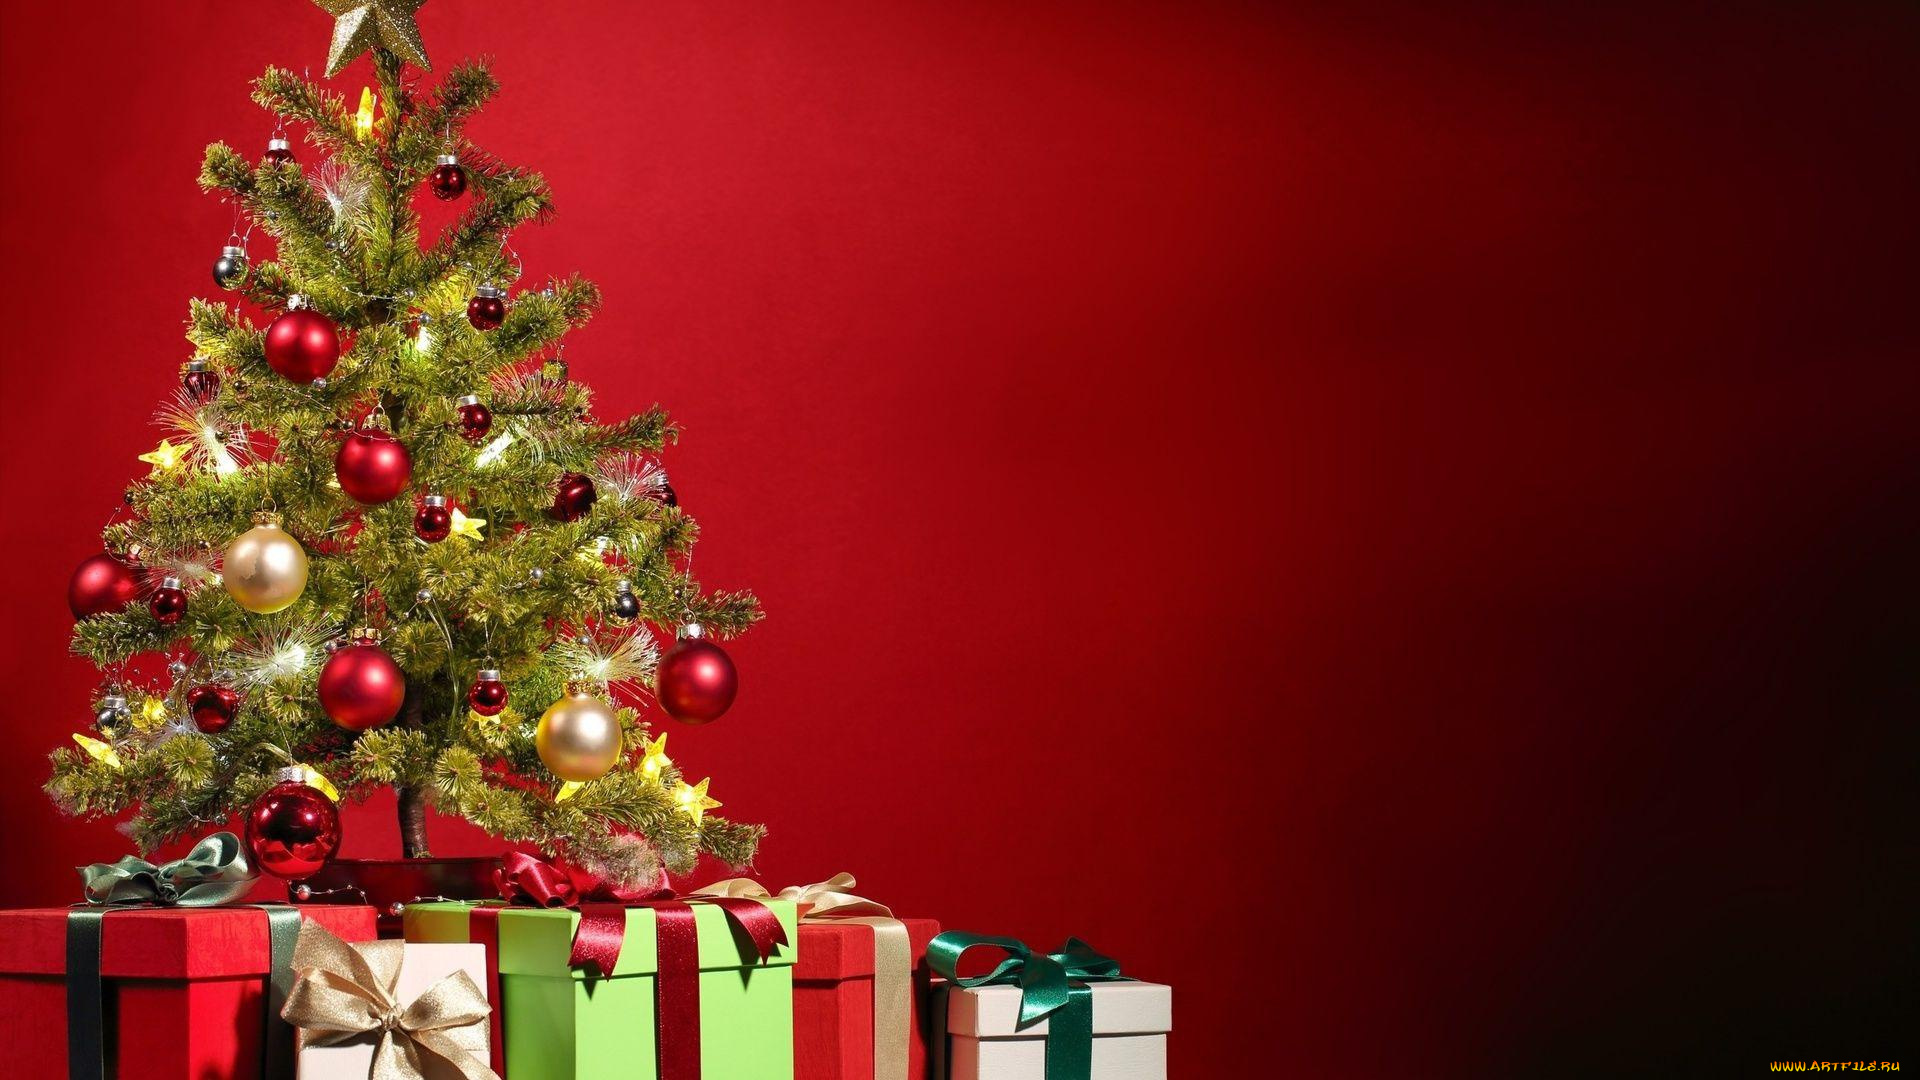 праздничные, подарки, и, коробочки, новый, год, подарки, merry, christmas, игрушки, xmas, holiday, celebration, украшения, tree, design, рождество, елка, decoration